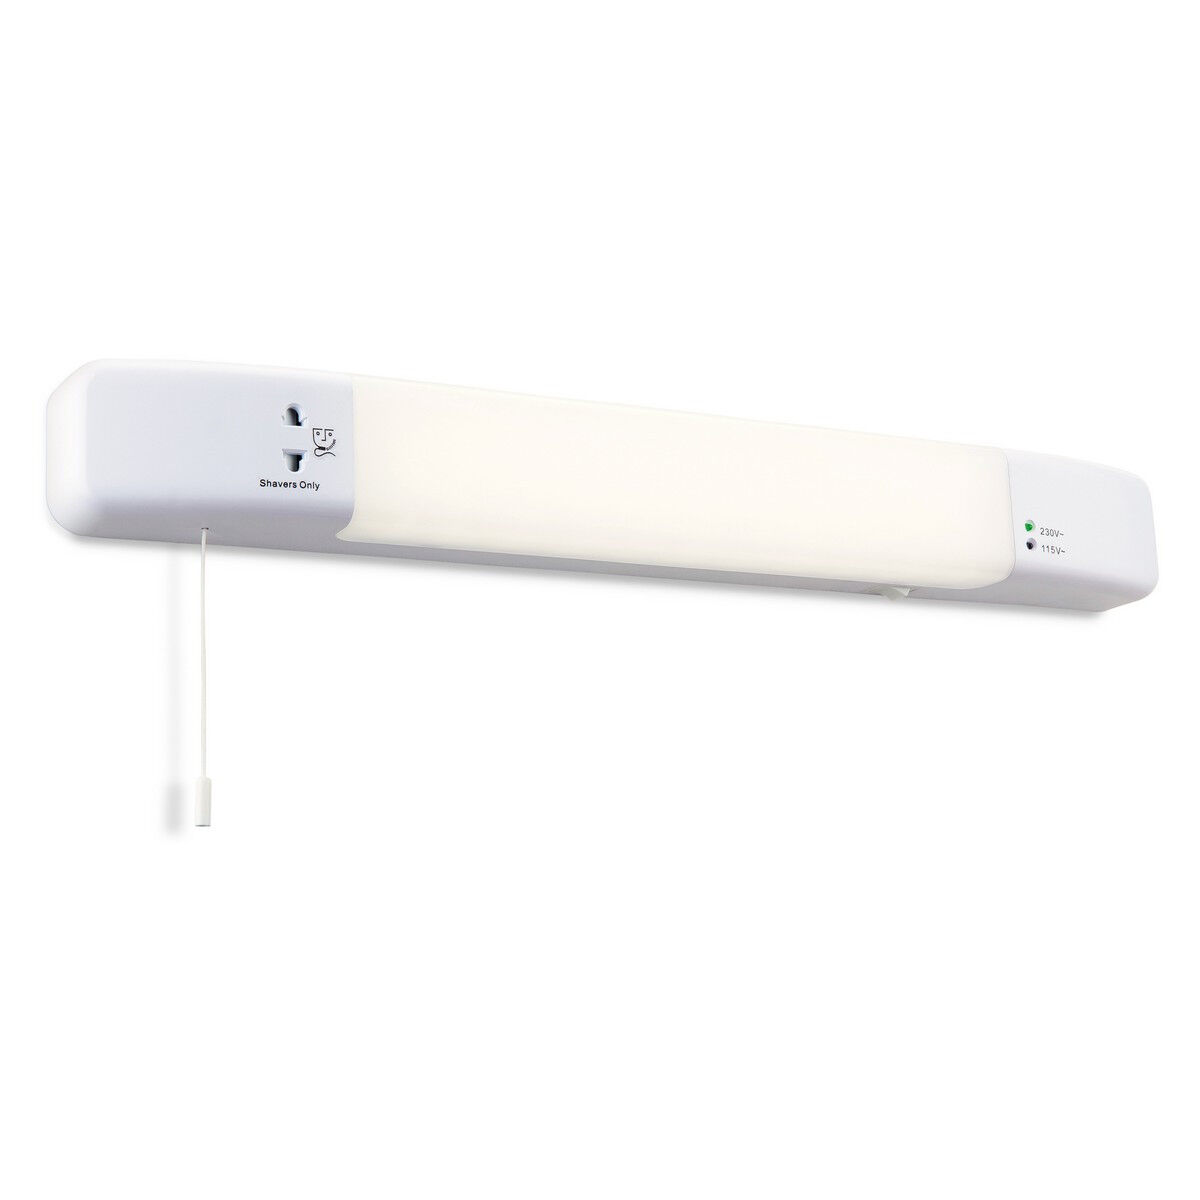 Firstlight Lighting Slimline LED Bathroom Shaver Light (Switched) White